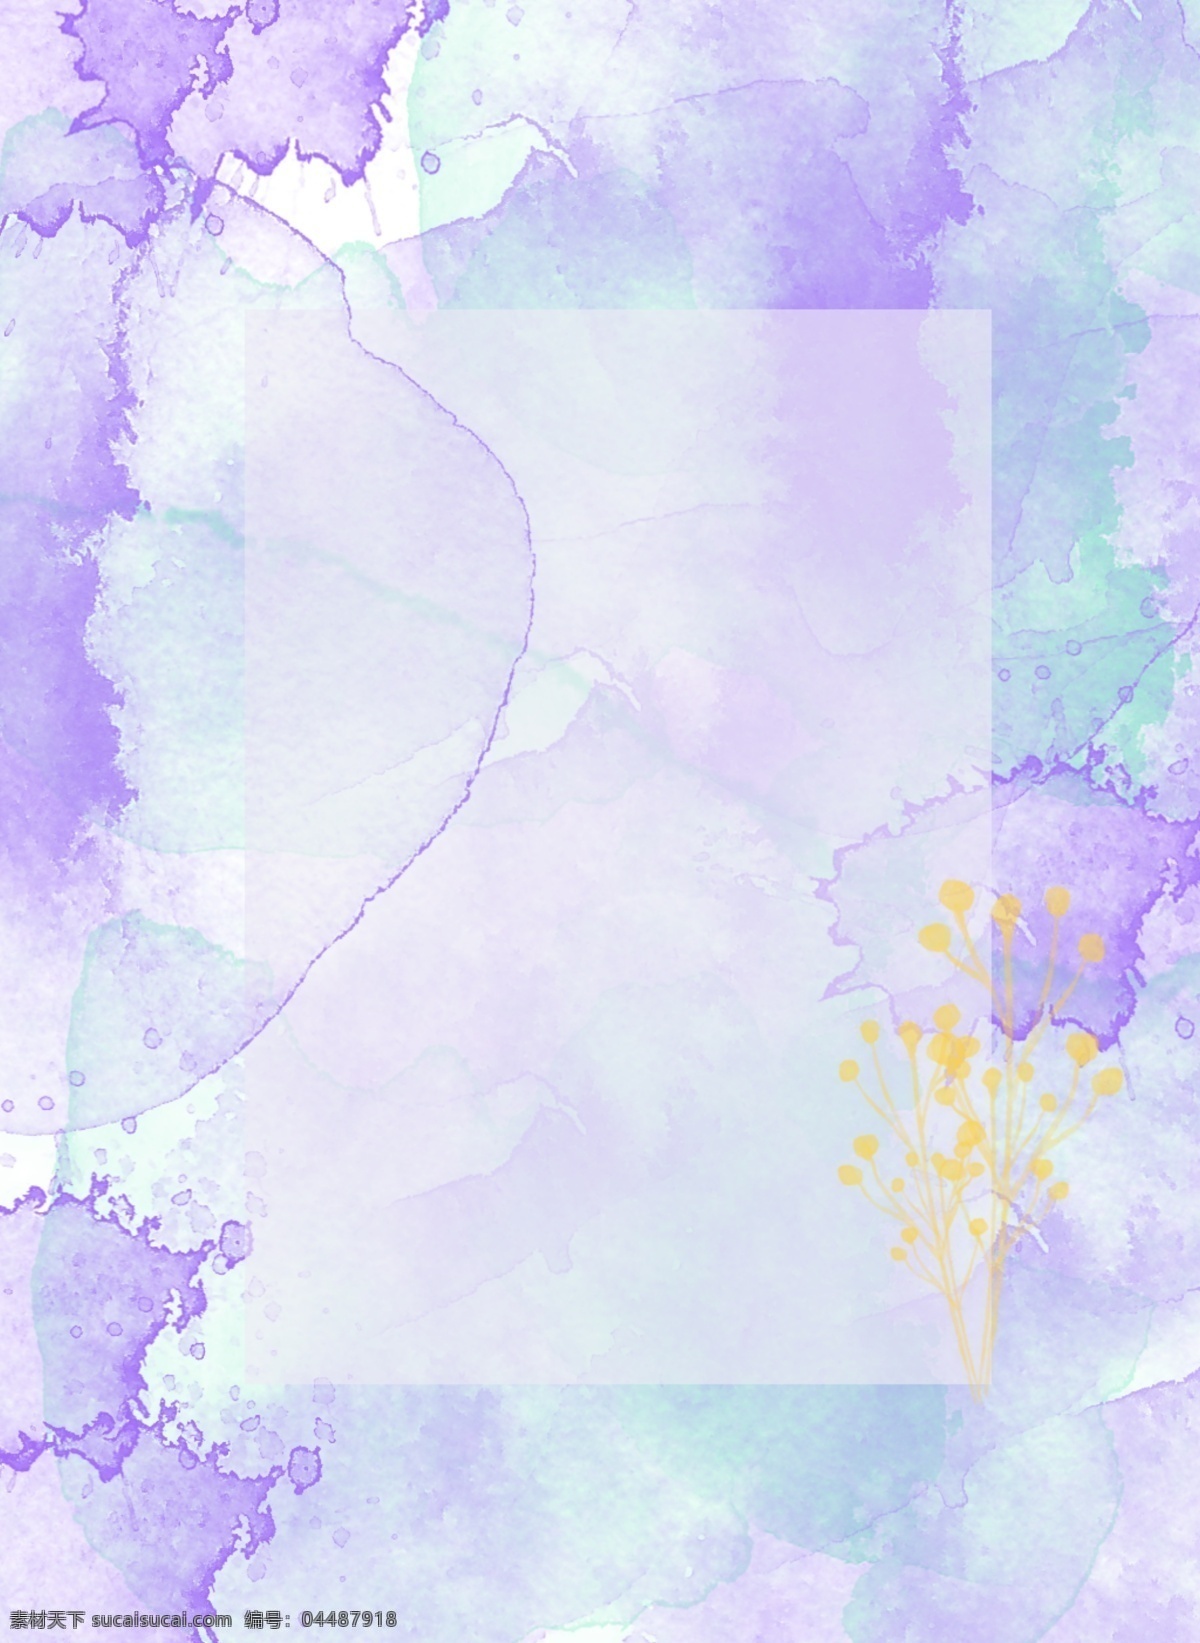 原创 水彩 紫兰 白 泼墨 方框 背景 方框背景素材 花卉 花卉背景 花卉水彩 手绘清新 原创水彩 紫兰白泼墨 手绘水彩手绘 花卉清新 花卉花卉手绘